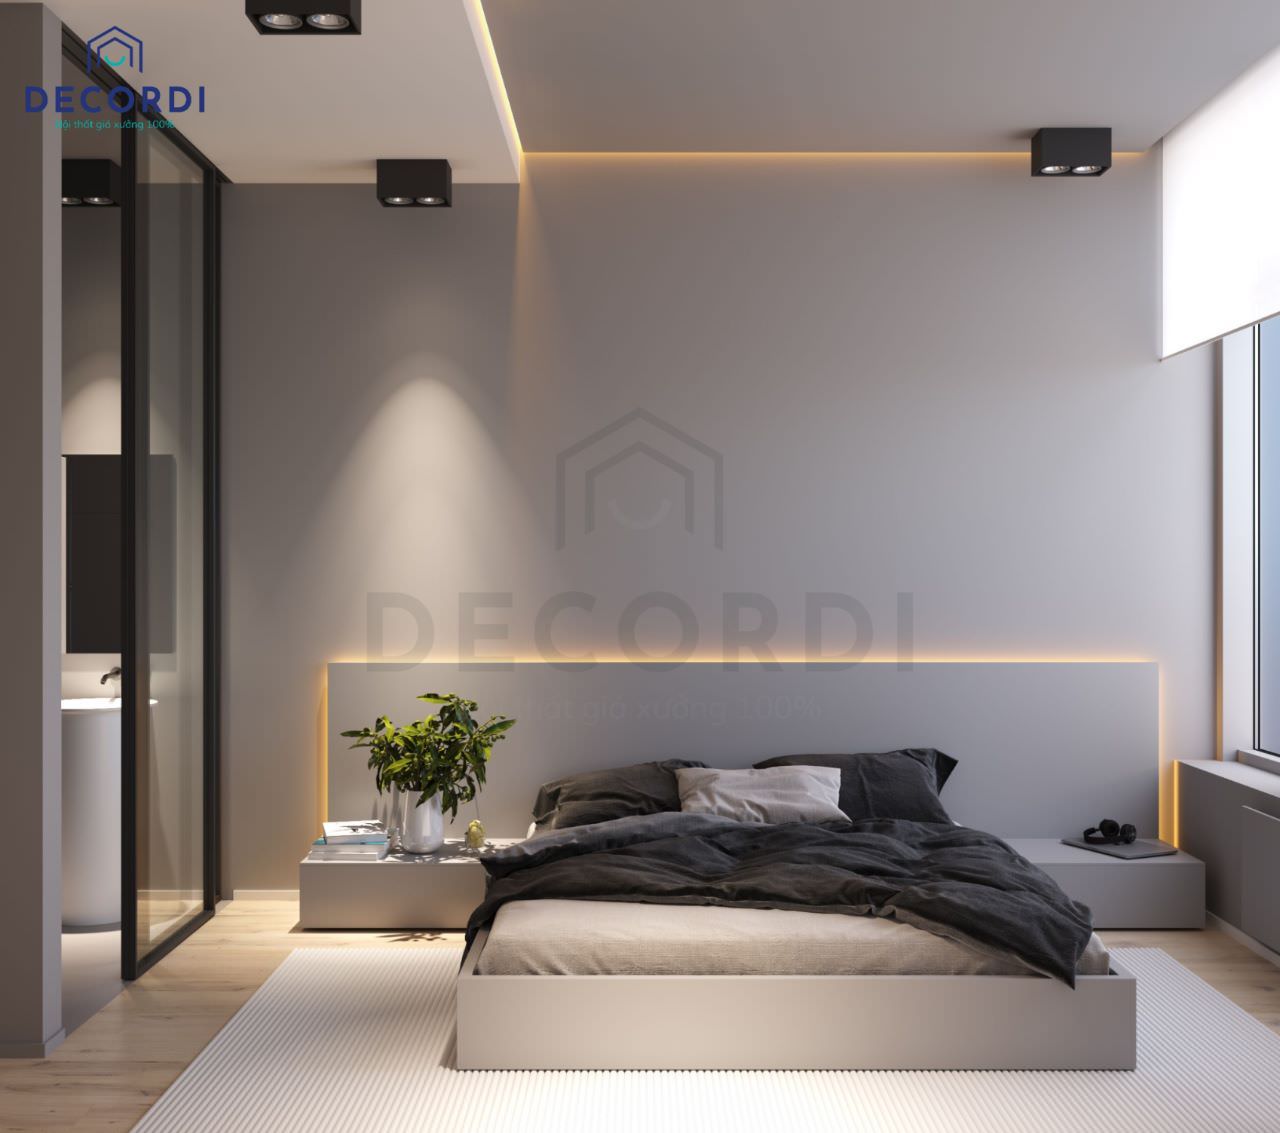 Nội thất phòng ngủ chung cư phong cách tối giản với tông màu trắng xám